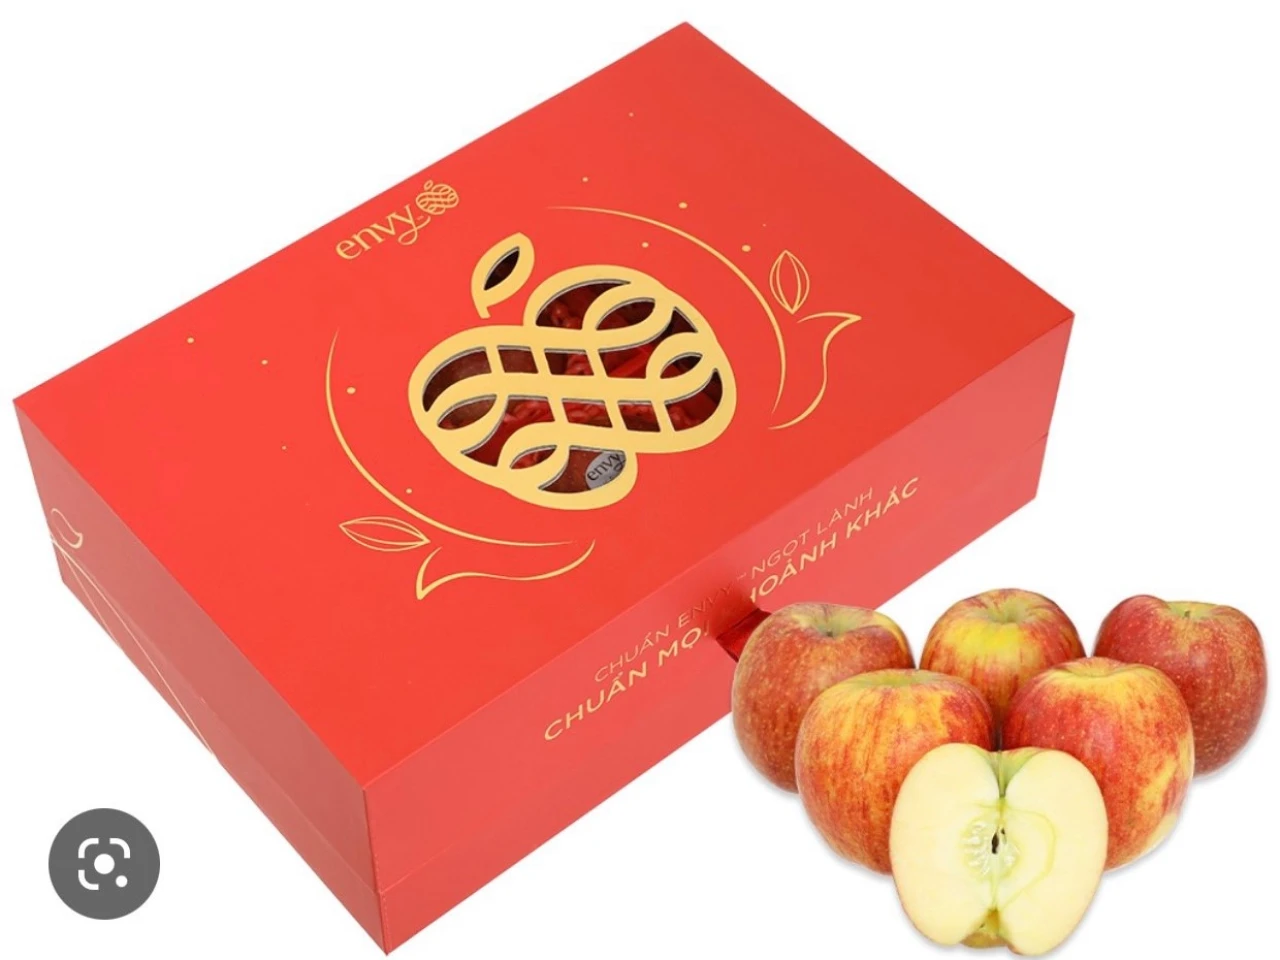 Hộp quà táo Envy thượng hàng ở Winmart cho tết thêm sức khỏe